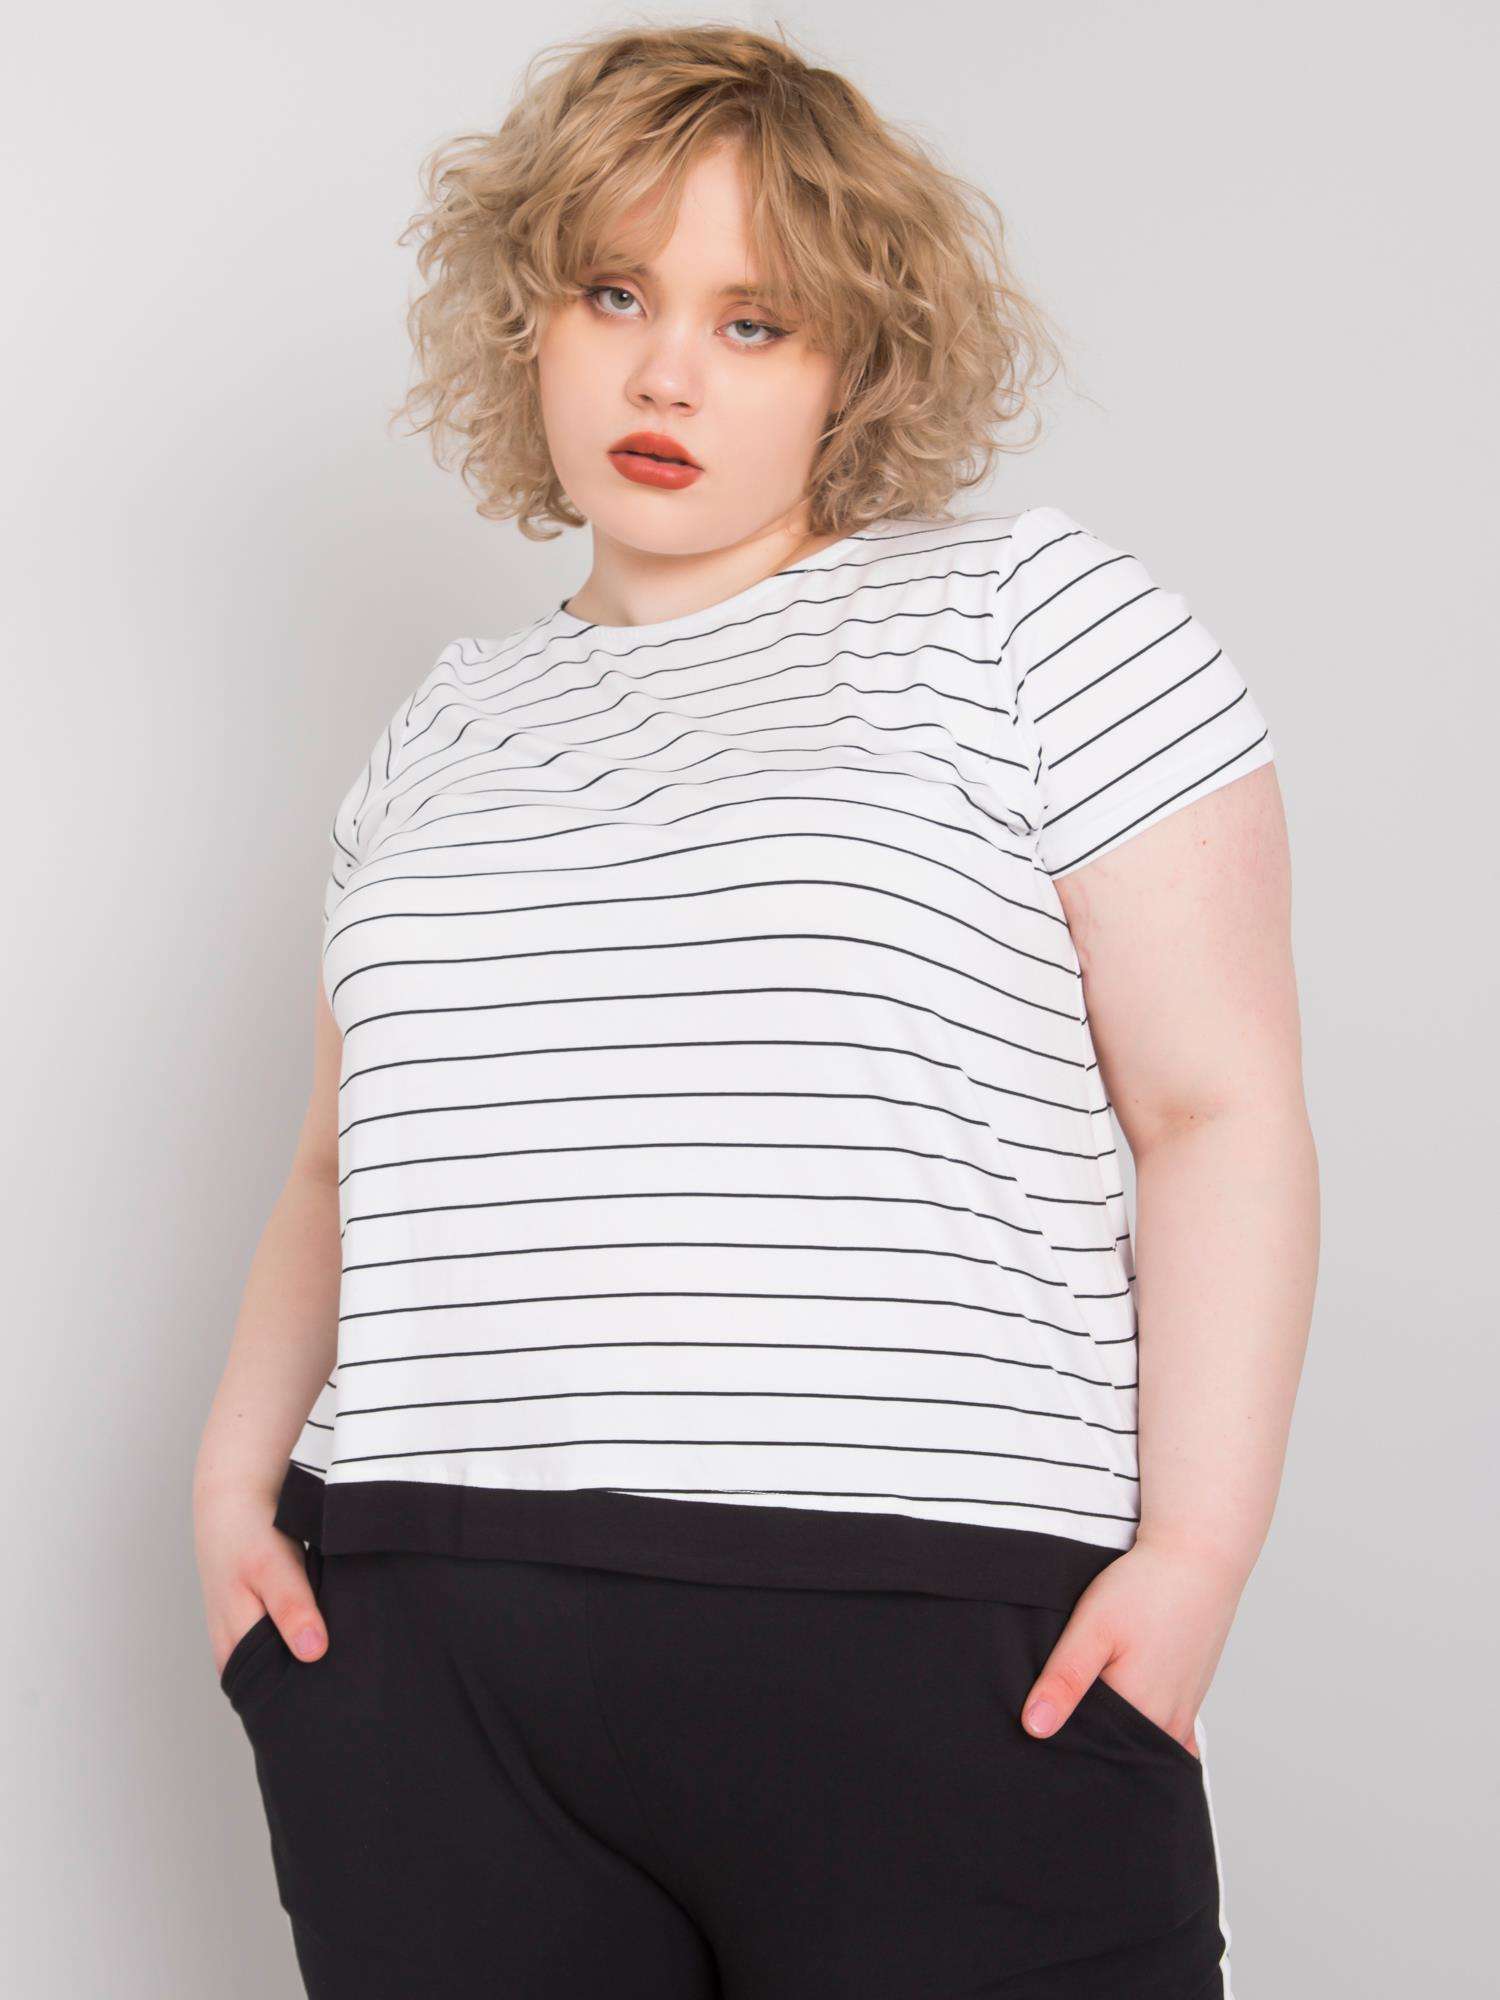 Čierno-biele dámske pruhované tričko RV-BZ-6631.07-white Veľkosť: 2XL